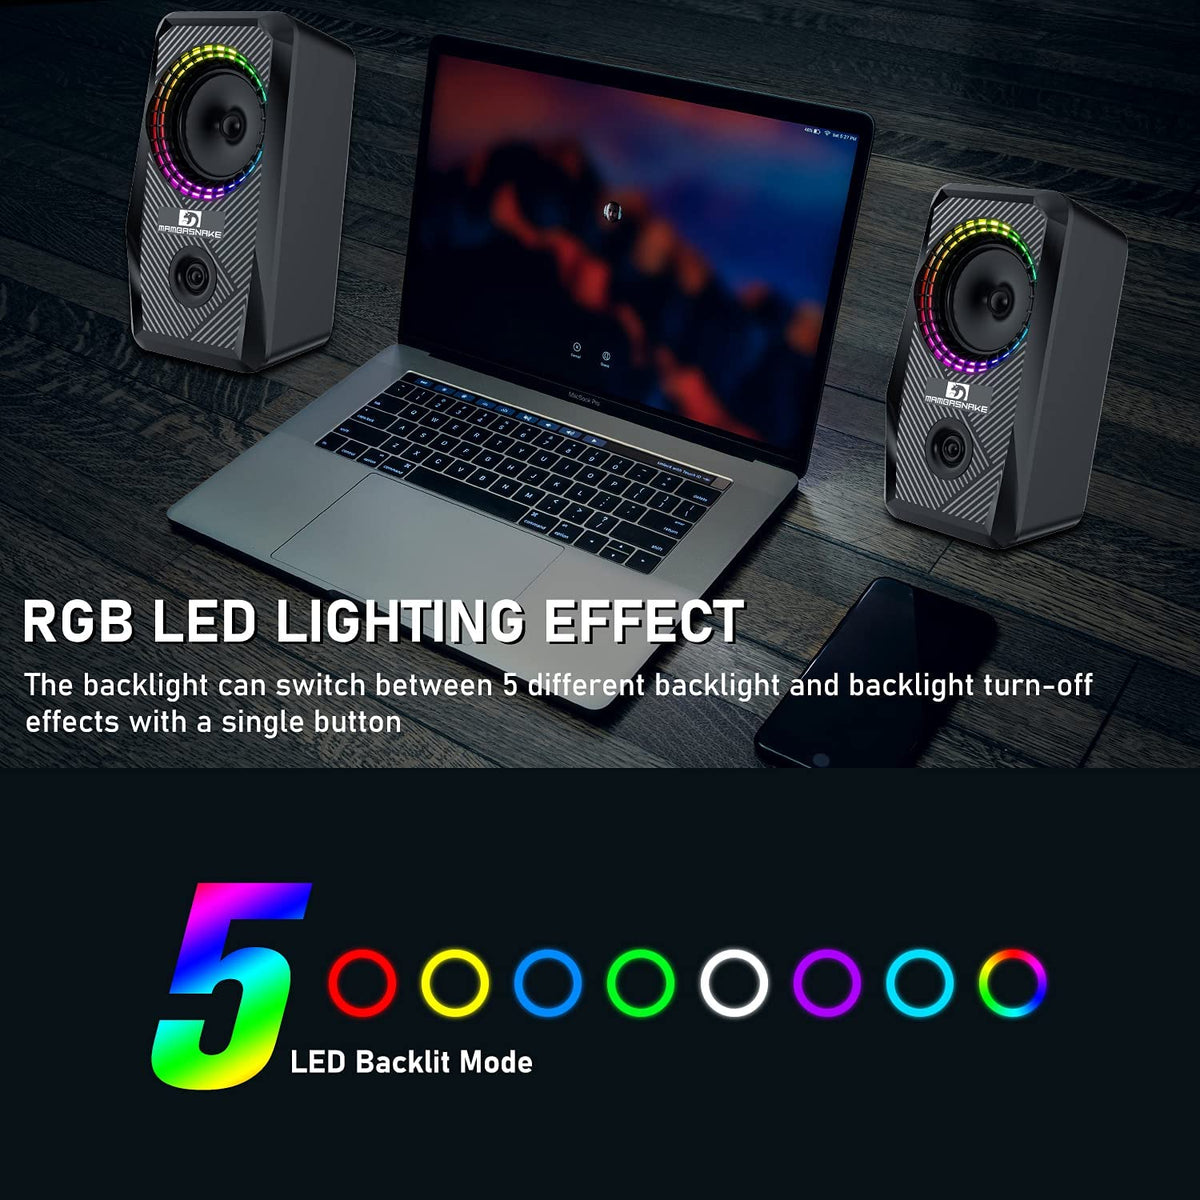 Altavoces RGB con cable para computadora, altavoz estéreo para PC de 2.0 canales con 6 modos LED de colores, sonido mejorado y control de volumen de fácil acceso, altavoces de escritorio alimentados por USB, cable de 3,5 mm para PC y portátiles (negro)